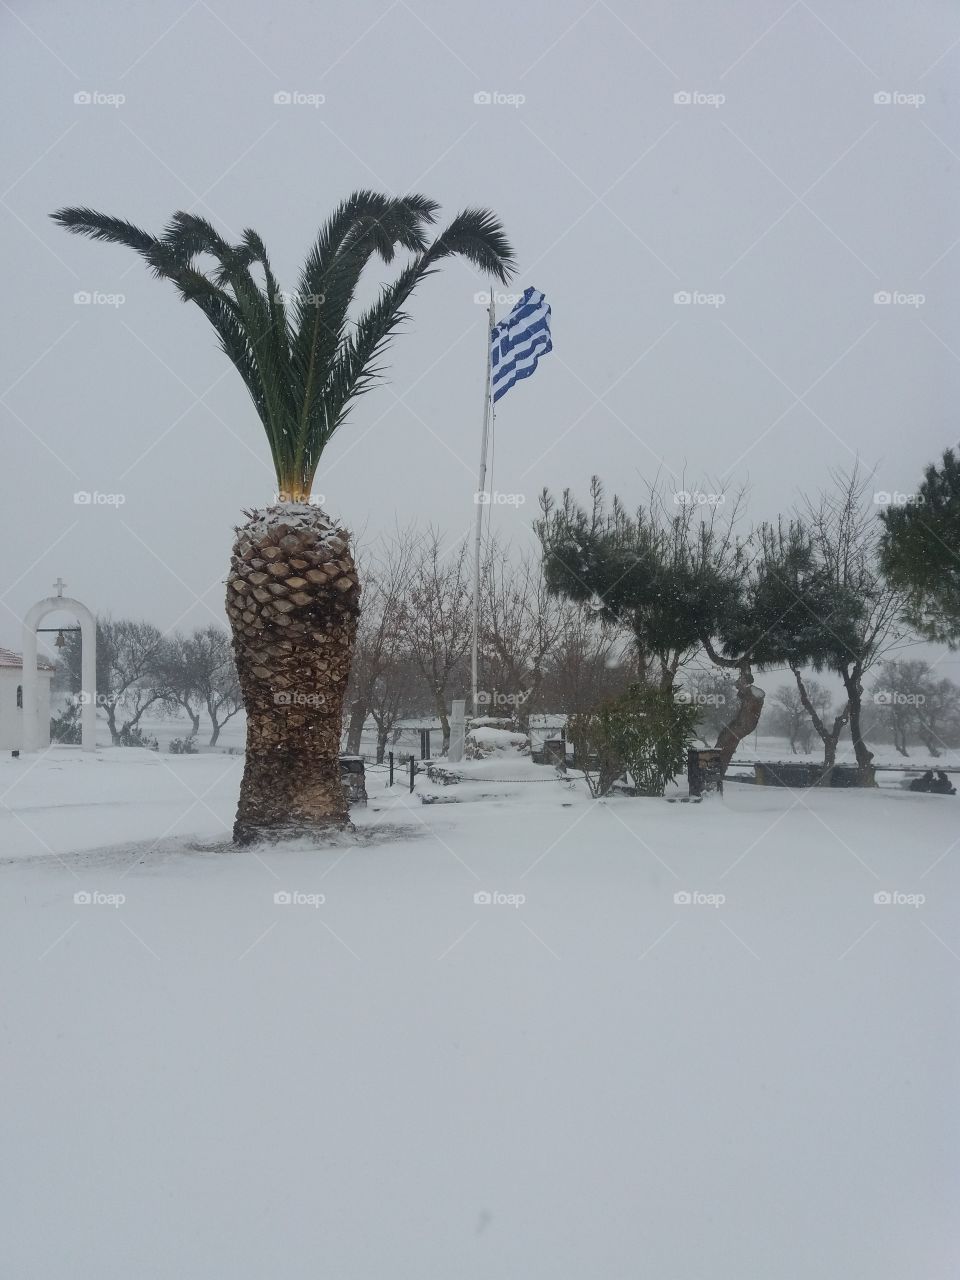 Snow on a Greek Island